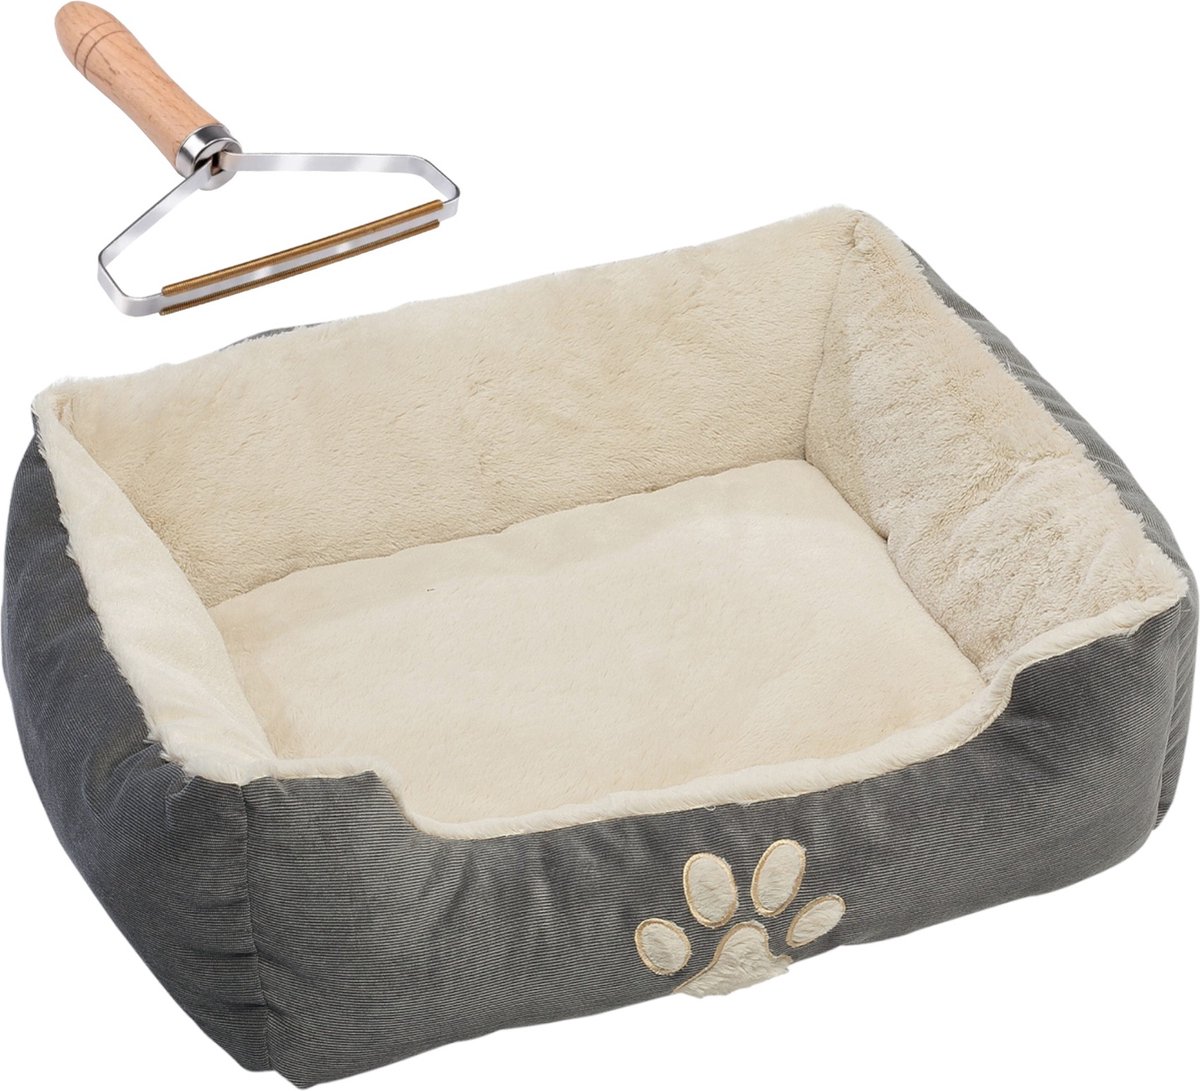 Huisdier Comfort Dierenkussen - Huisdierenbed - Voor kat & hond 60x48x18cm + Handige Haarverwijderaar